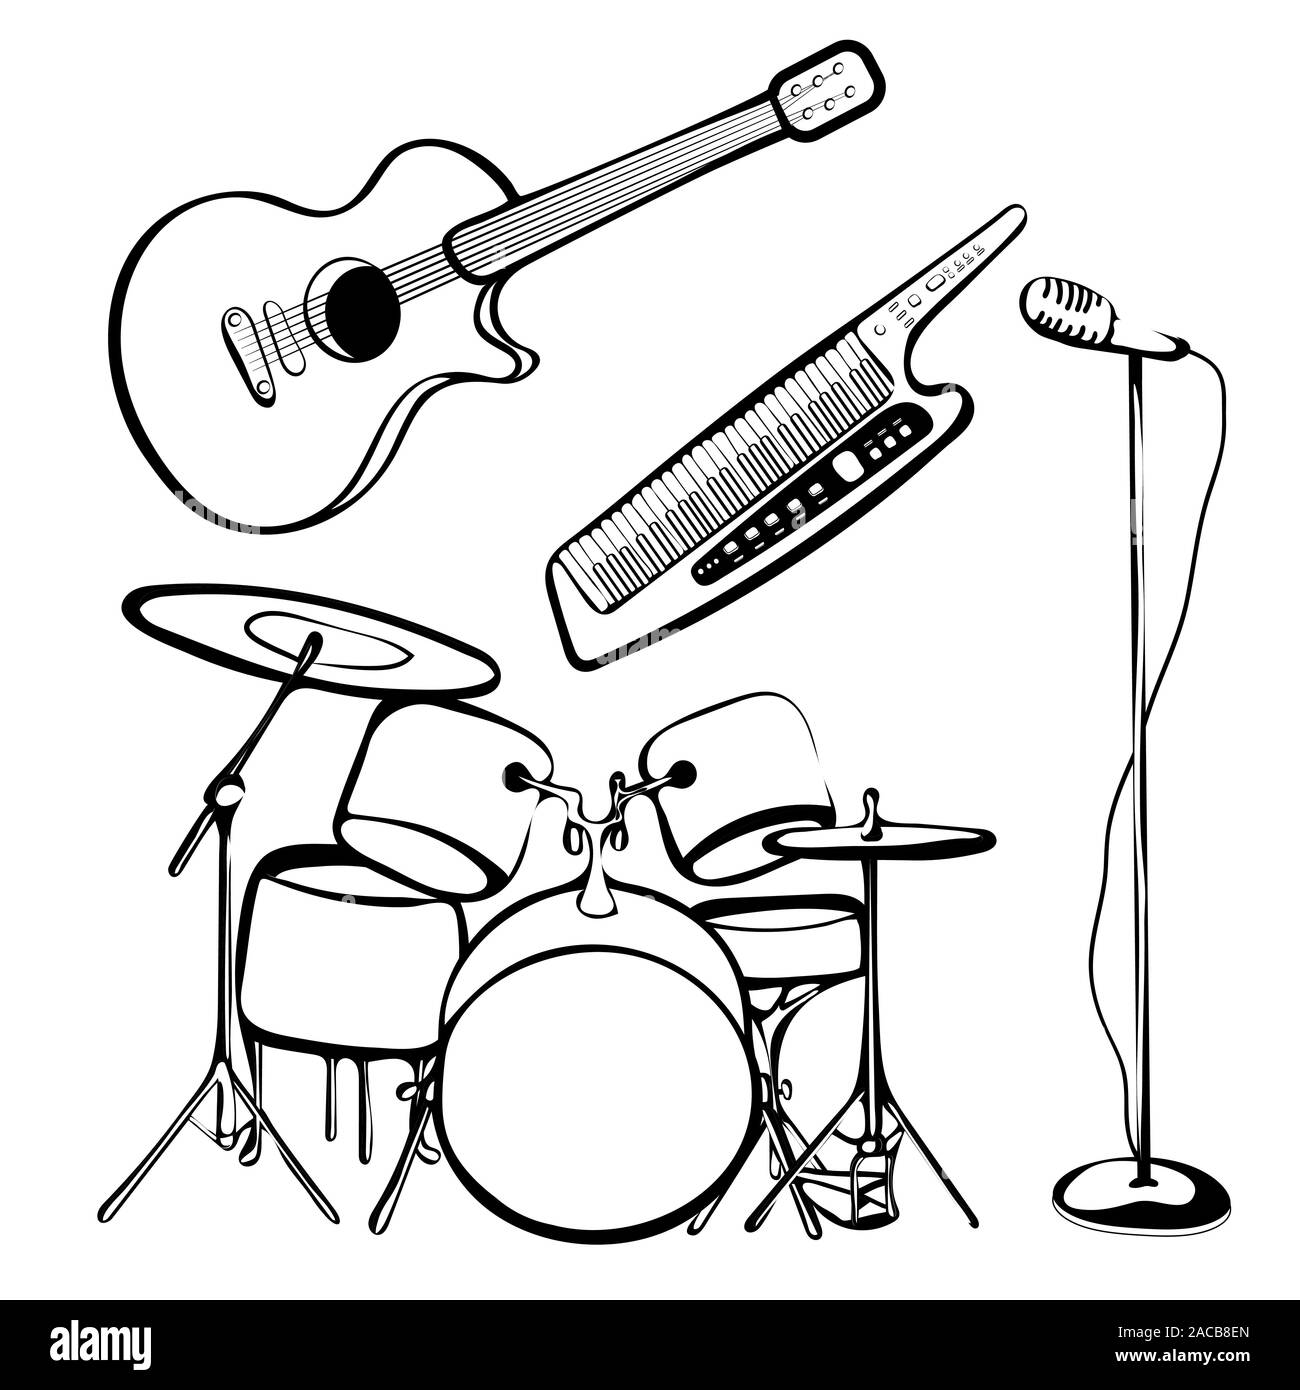 Ensemble d'instruments de musique, contours dessin à la main, noir et blanc, l'icône du rock and roll, silhouette. Kit de batterie, synthétiseur, guitare, microphone est Illustration de Vecteur